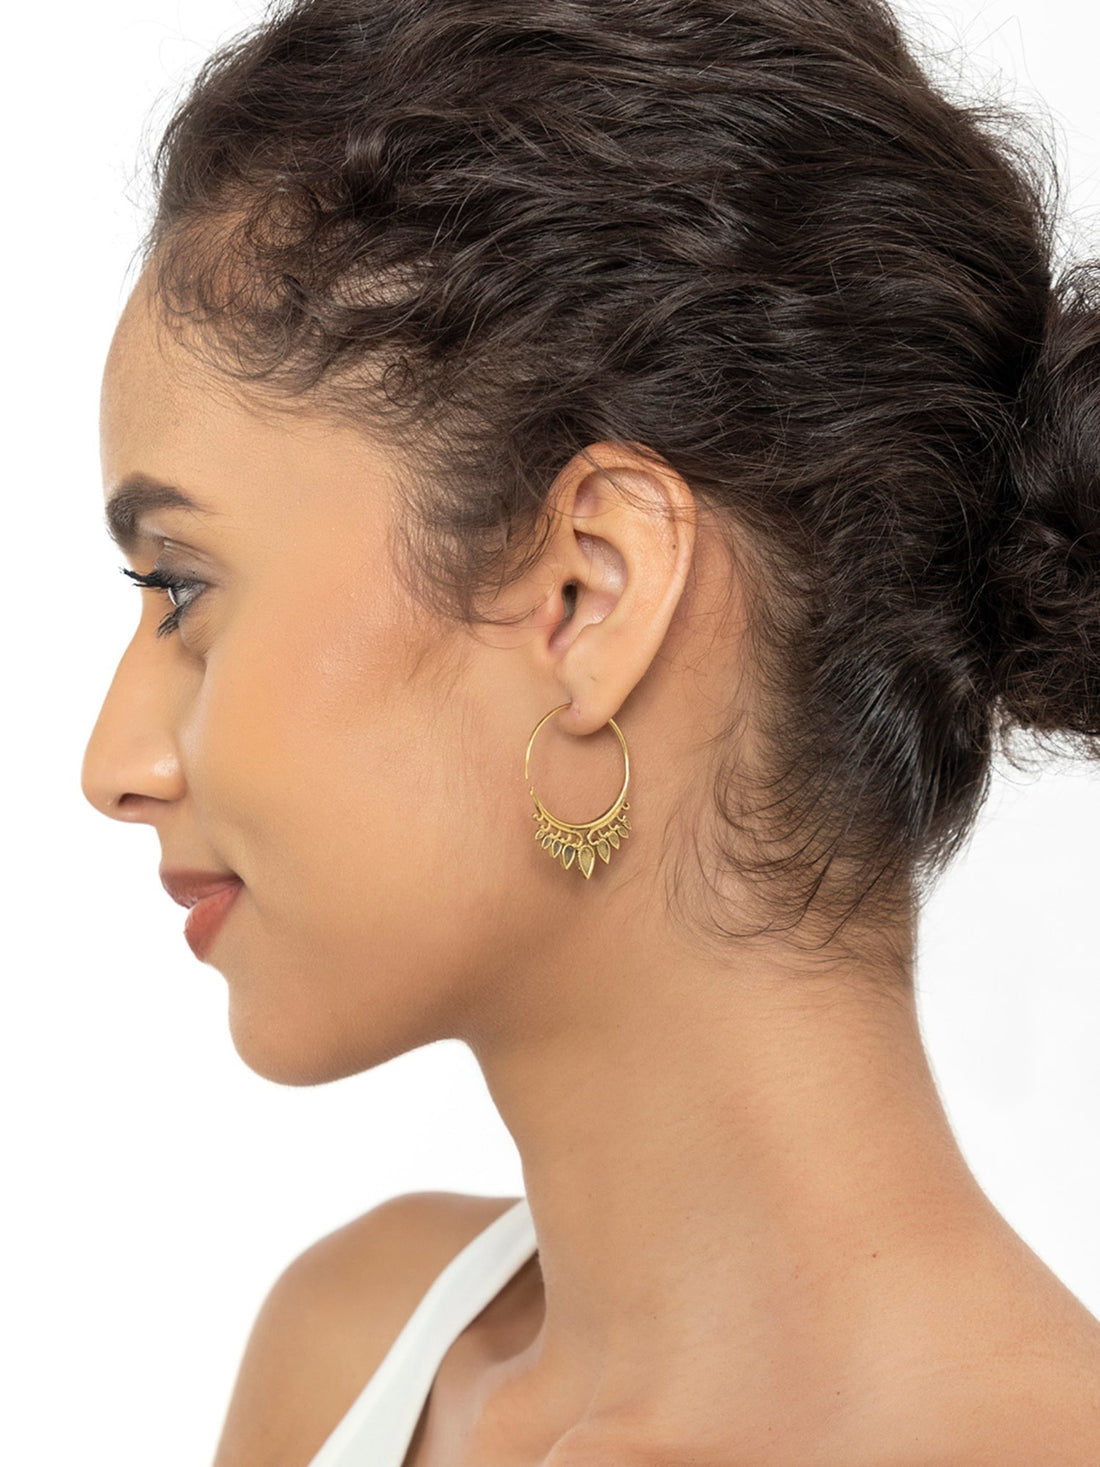 Work Wear Hoops Earrings - Traditional Gold-Plated Brass Earrings By Studio One Love